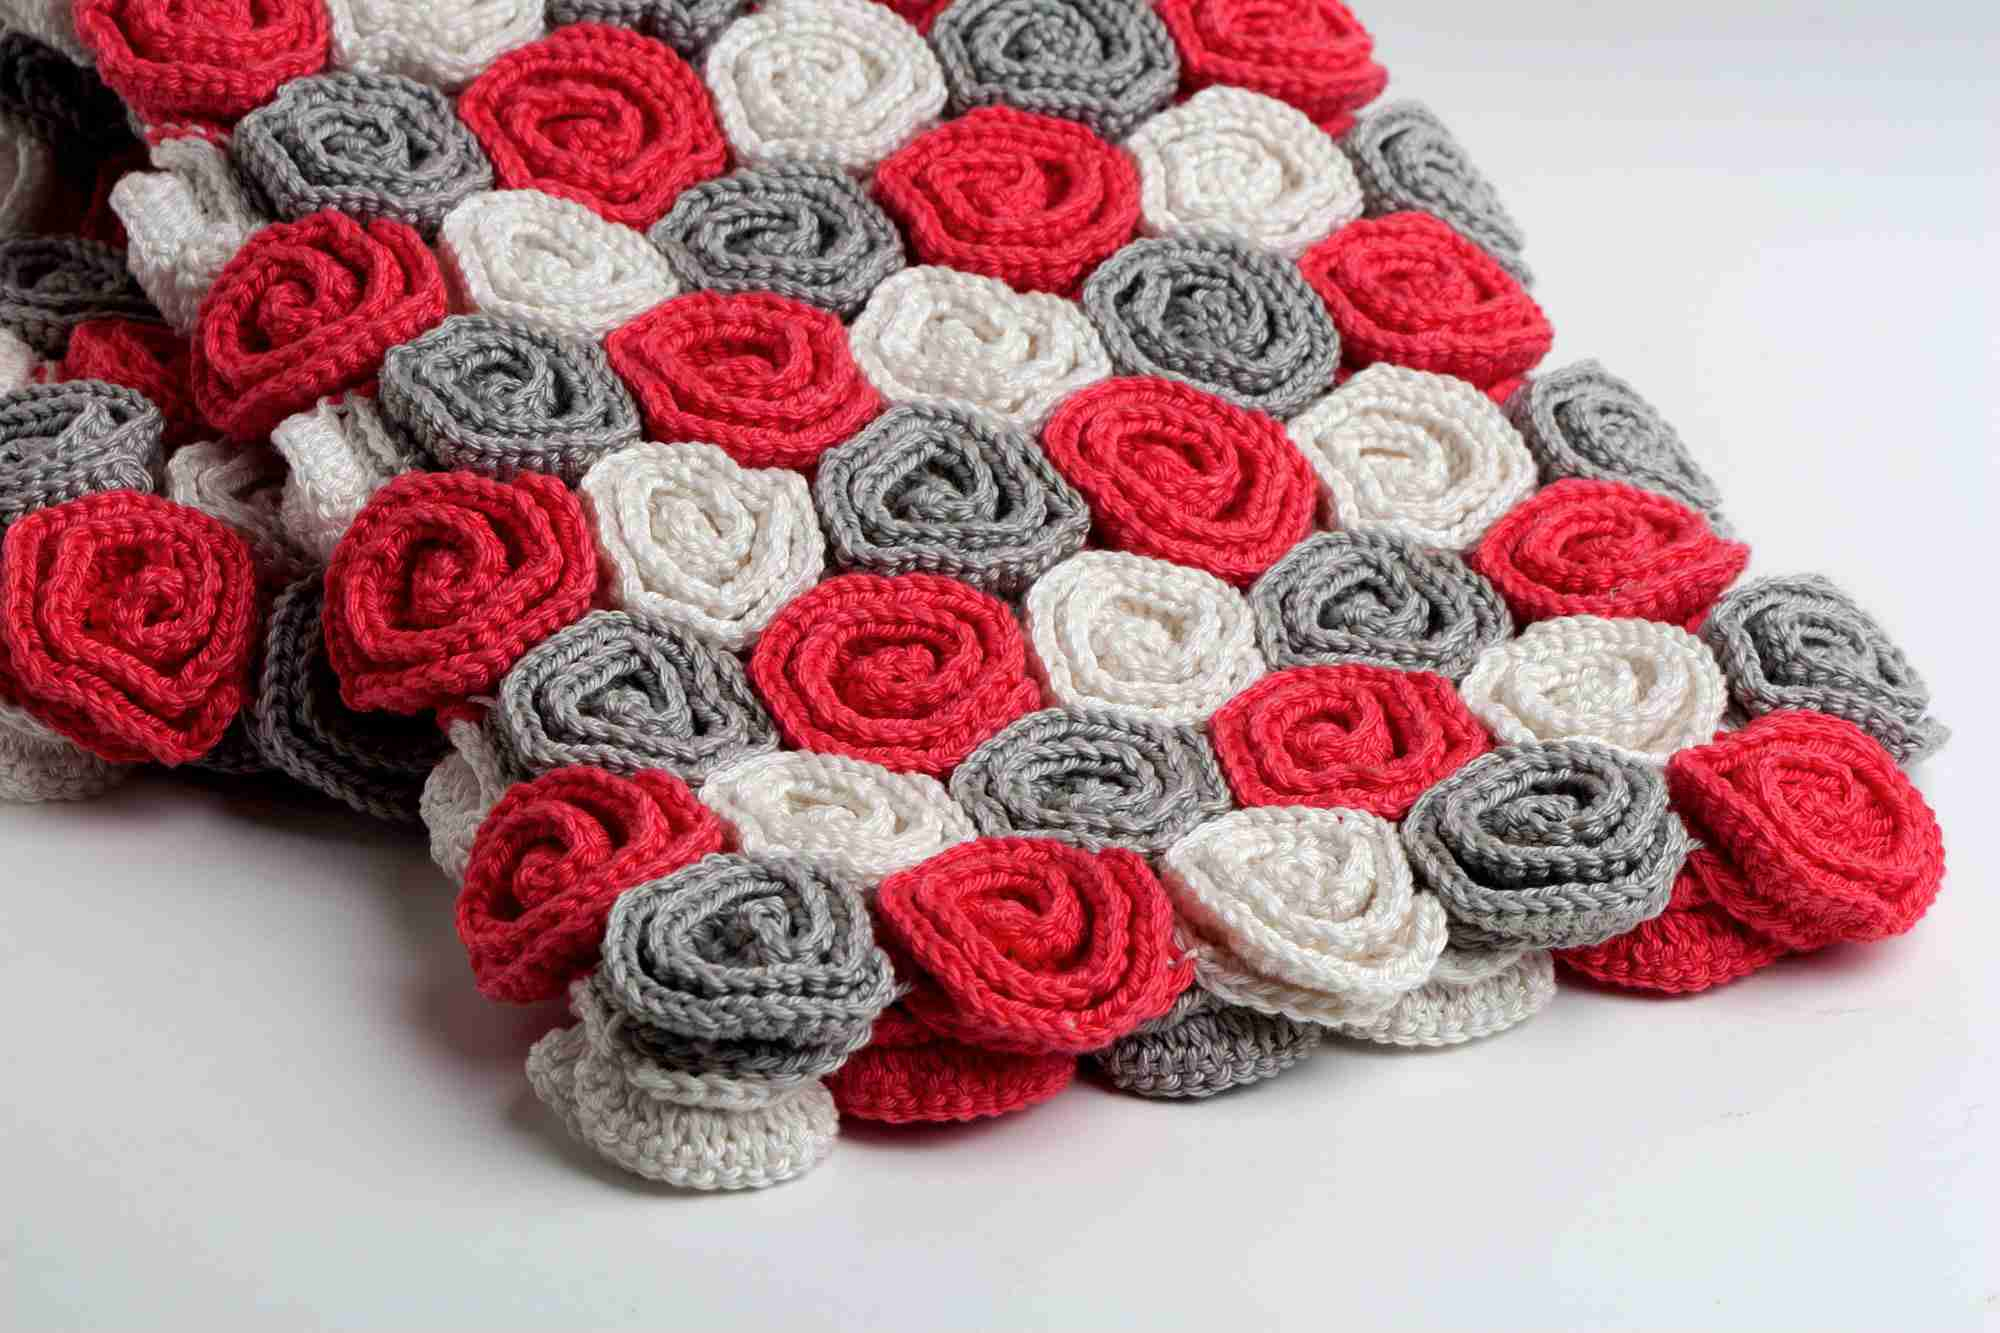 Crochet Rose Pattern 9 Crochet Patterns For Roses